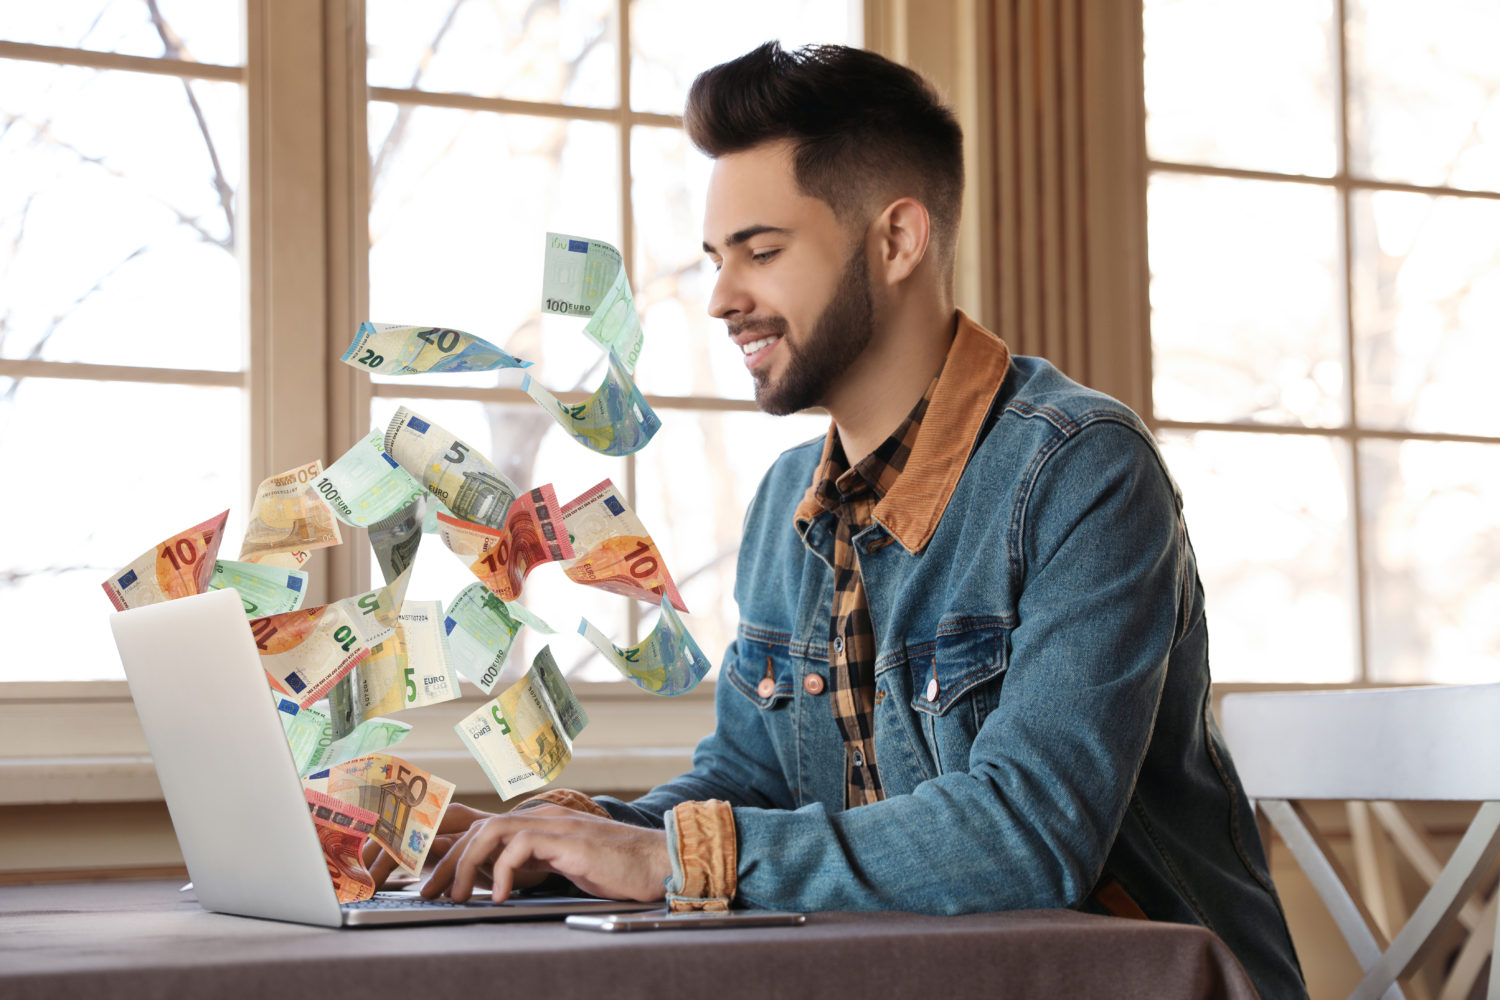 6 Ways To Make Money Online Fast